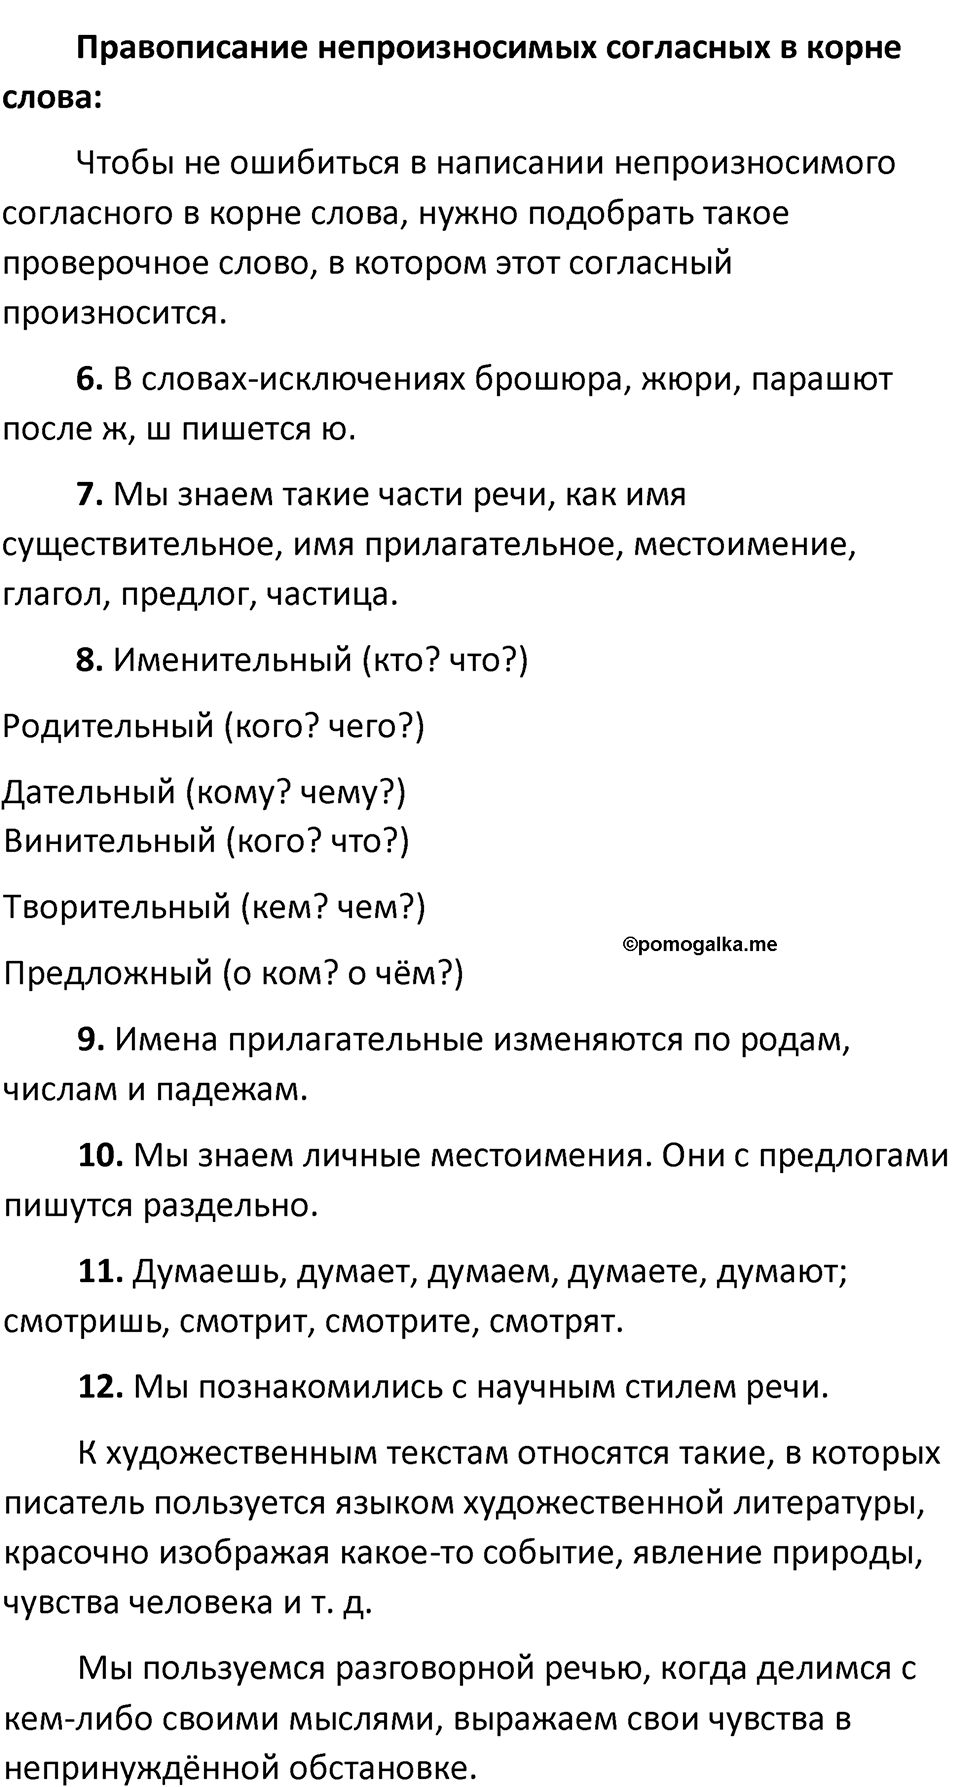 страница 60 повторение русский язык 5 класс Ладыженская, Баранов, Тростенцова, Григорян 2020 год